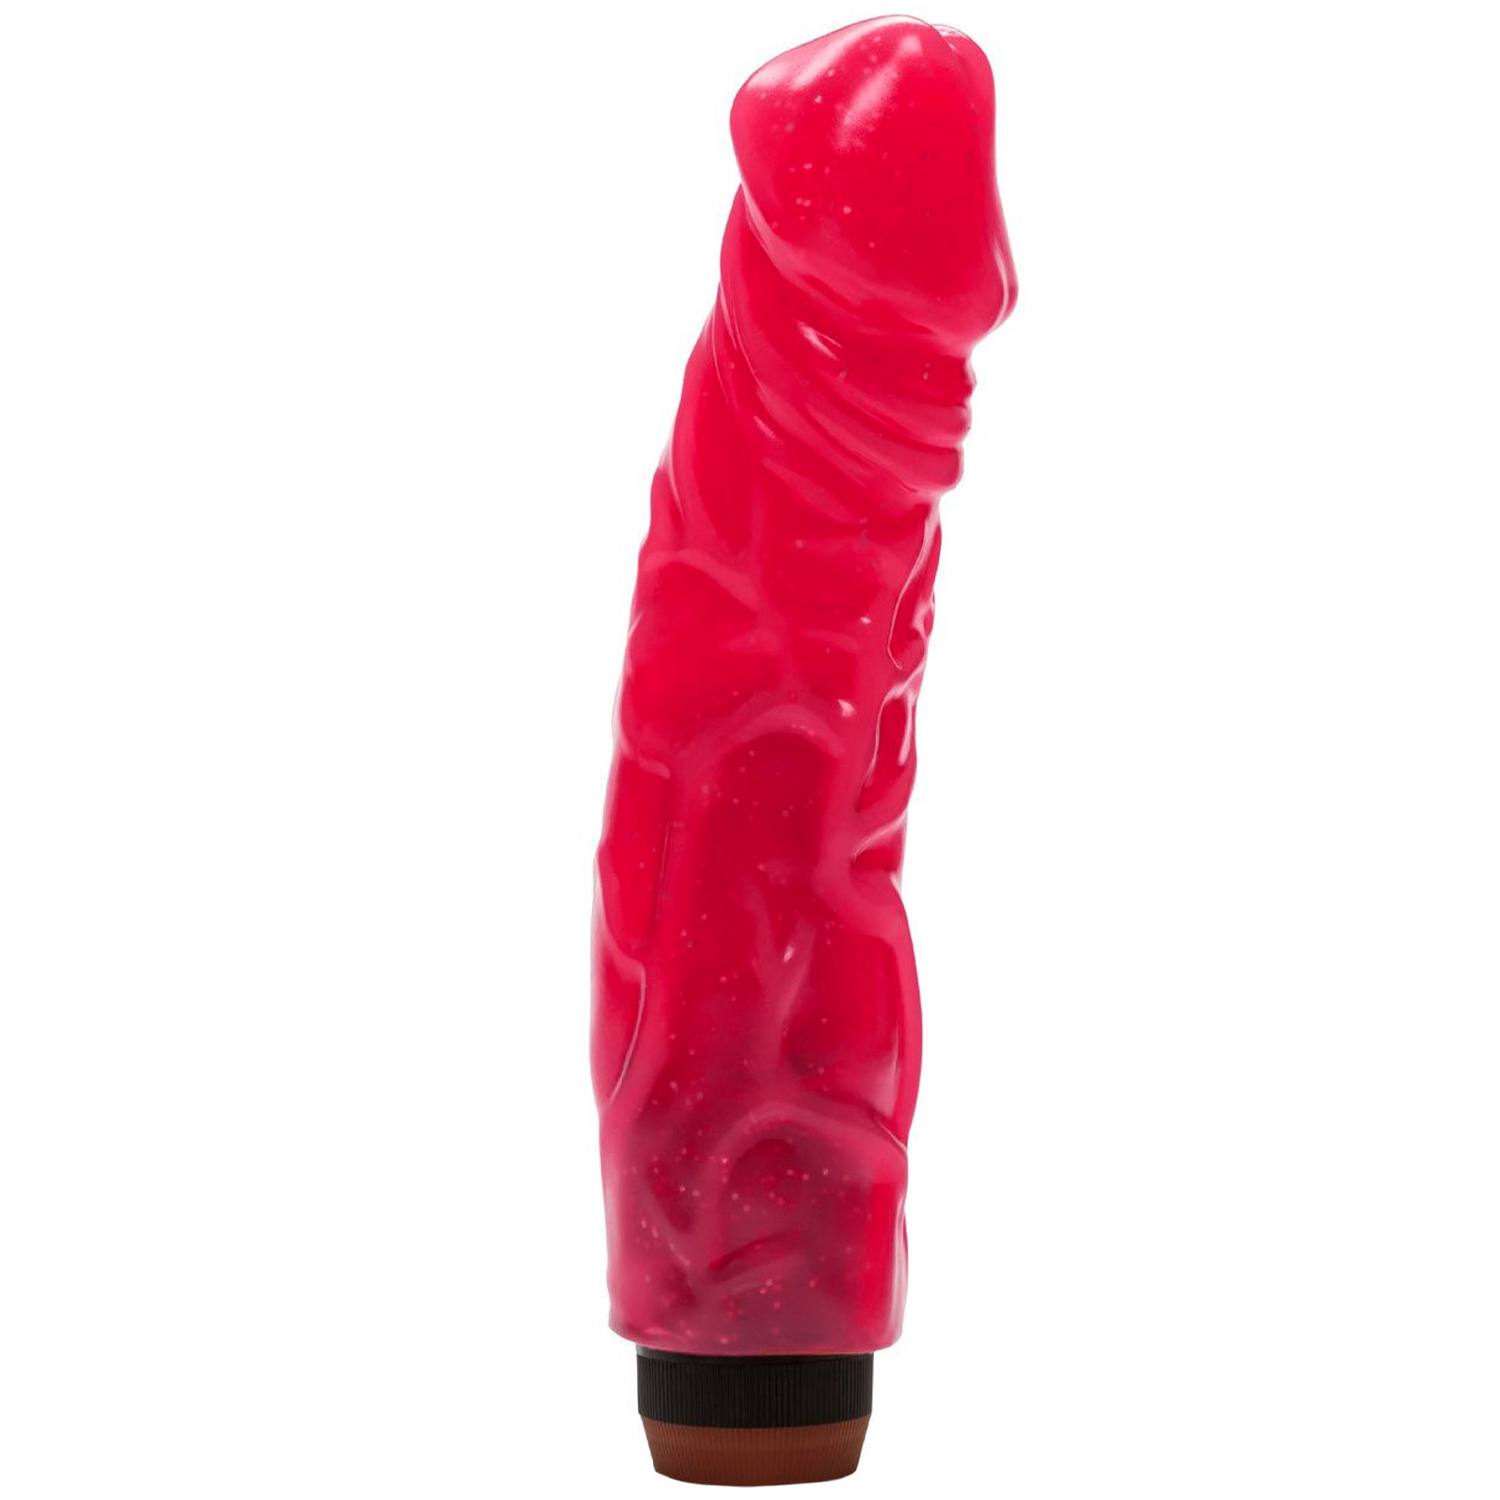 CalExotics Hot Pinks Devil Dick Dildo Vibrator